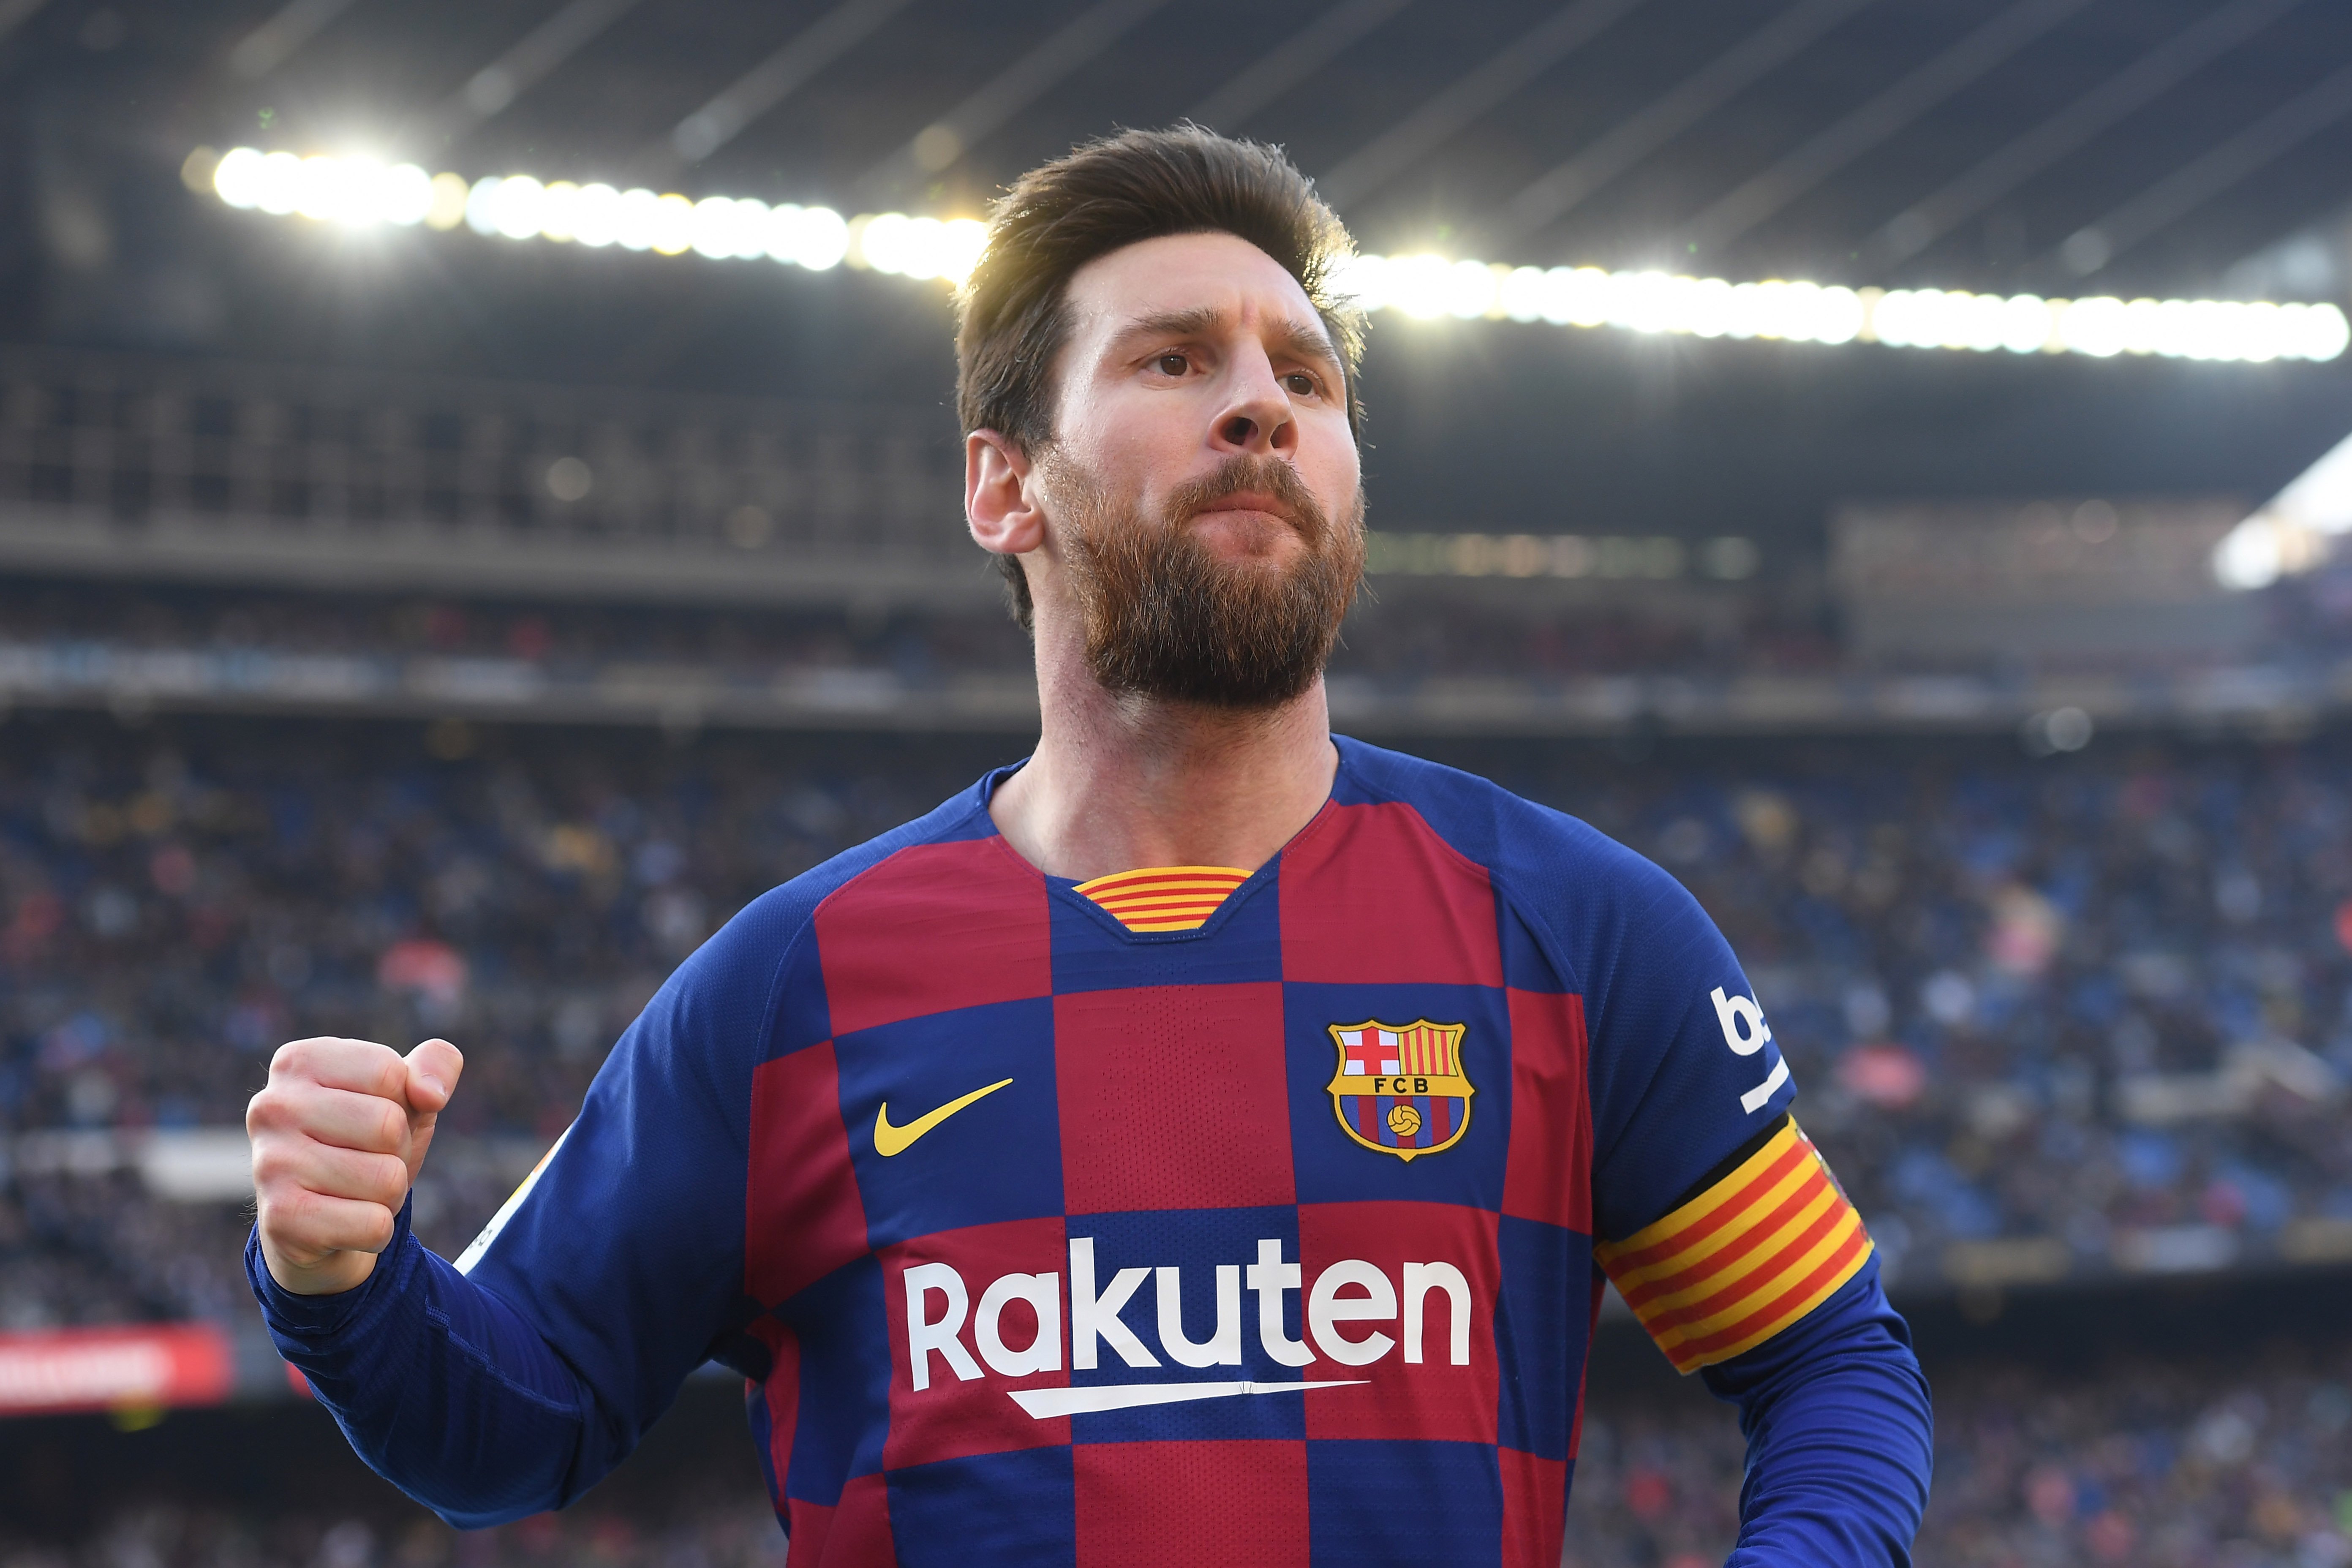 LIONEL MESSI - Messi, aos 33 anos, disse na terça-feira que não quer mais jogar no Barcelona. A partir daí uma série de possíveis destinos apareceu no futuro do craque. Manchester City e PSG são algumas das opções.